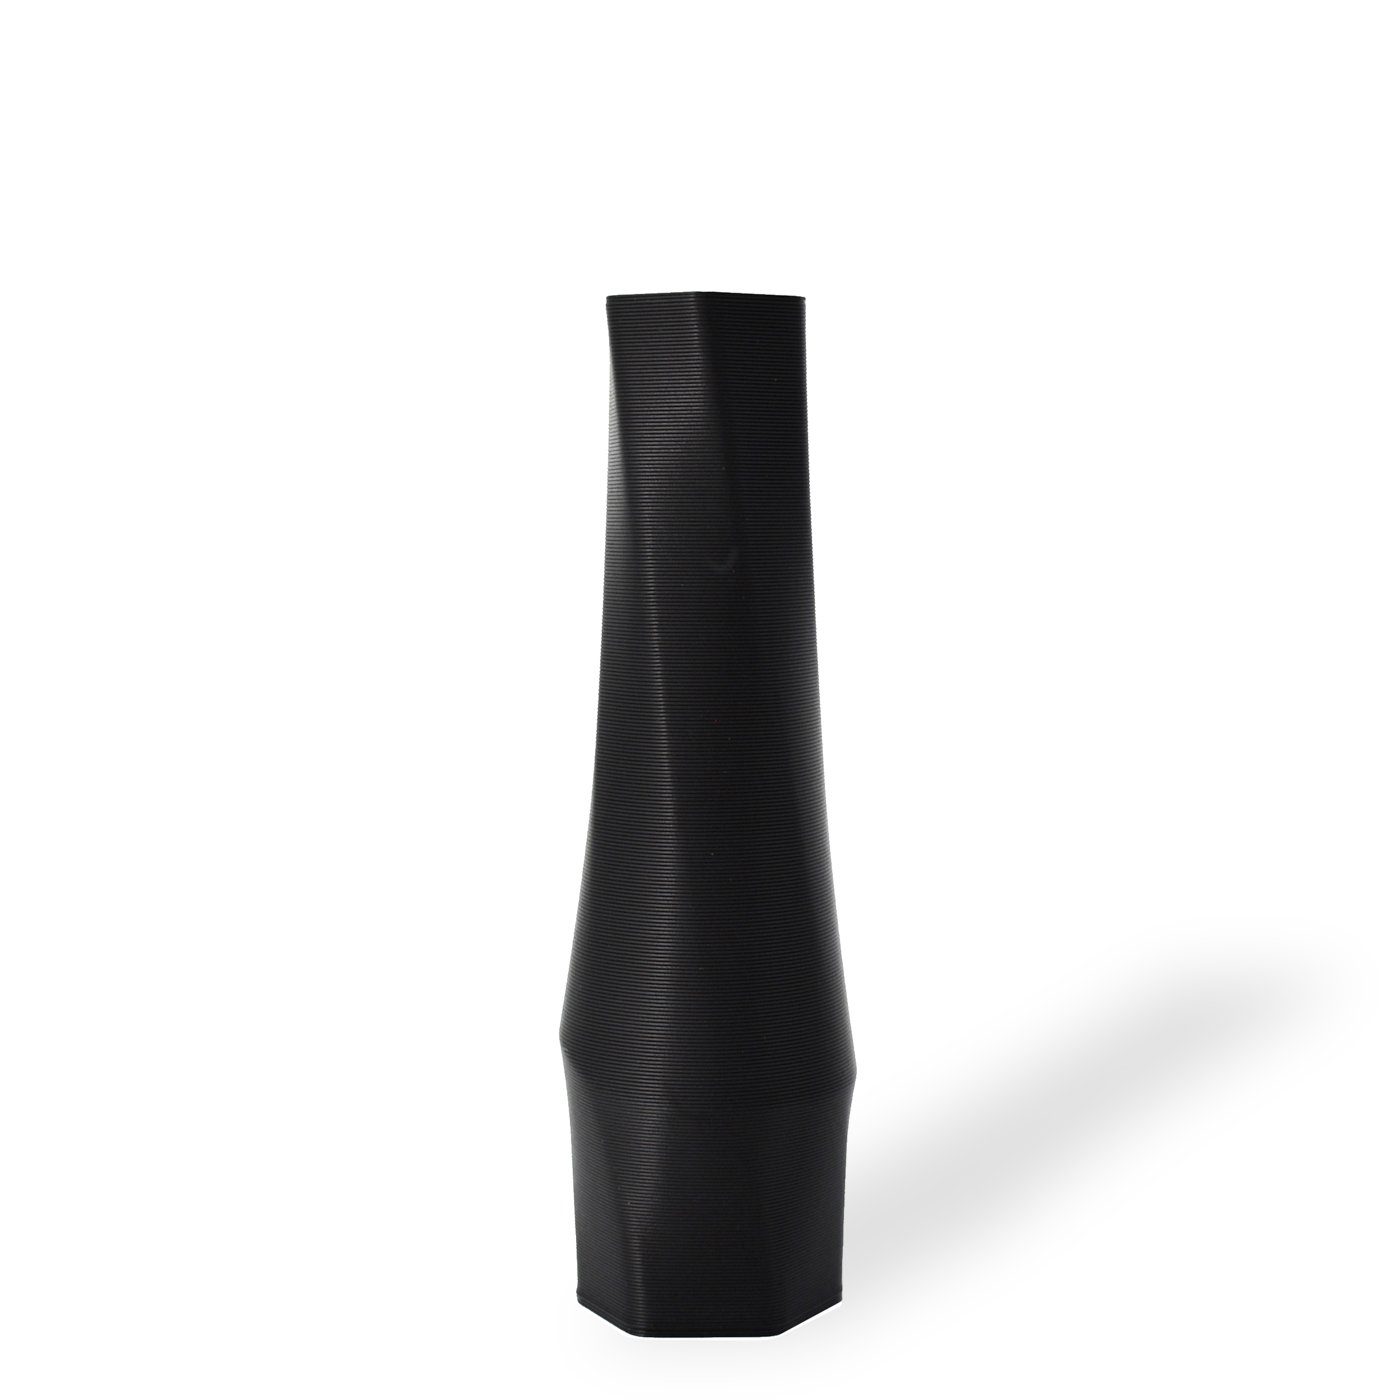 Shapes - Decorations Dekovase the vase - hexagon (basic), 3D Vasen, viele Farben, 100% 3D-Druck (Einzelmodell, 1 Vase), Wasserdicht; Leichte Struktur innerhalb des Materials (Rillung) Schwarz